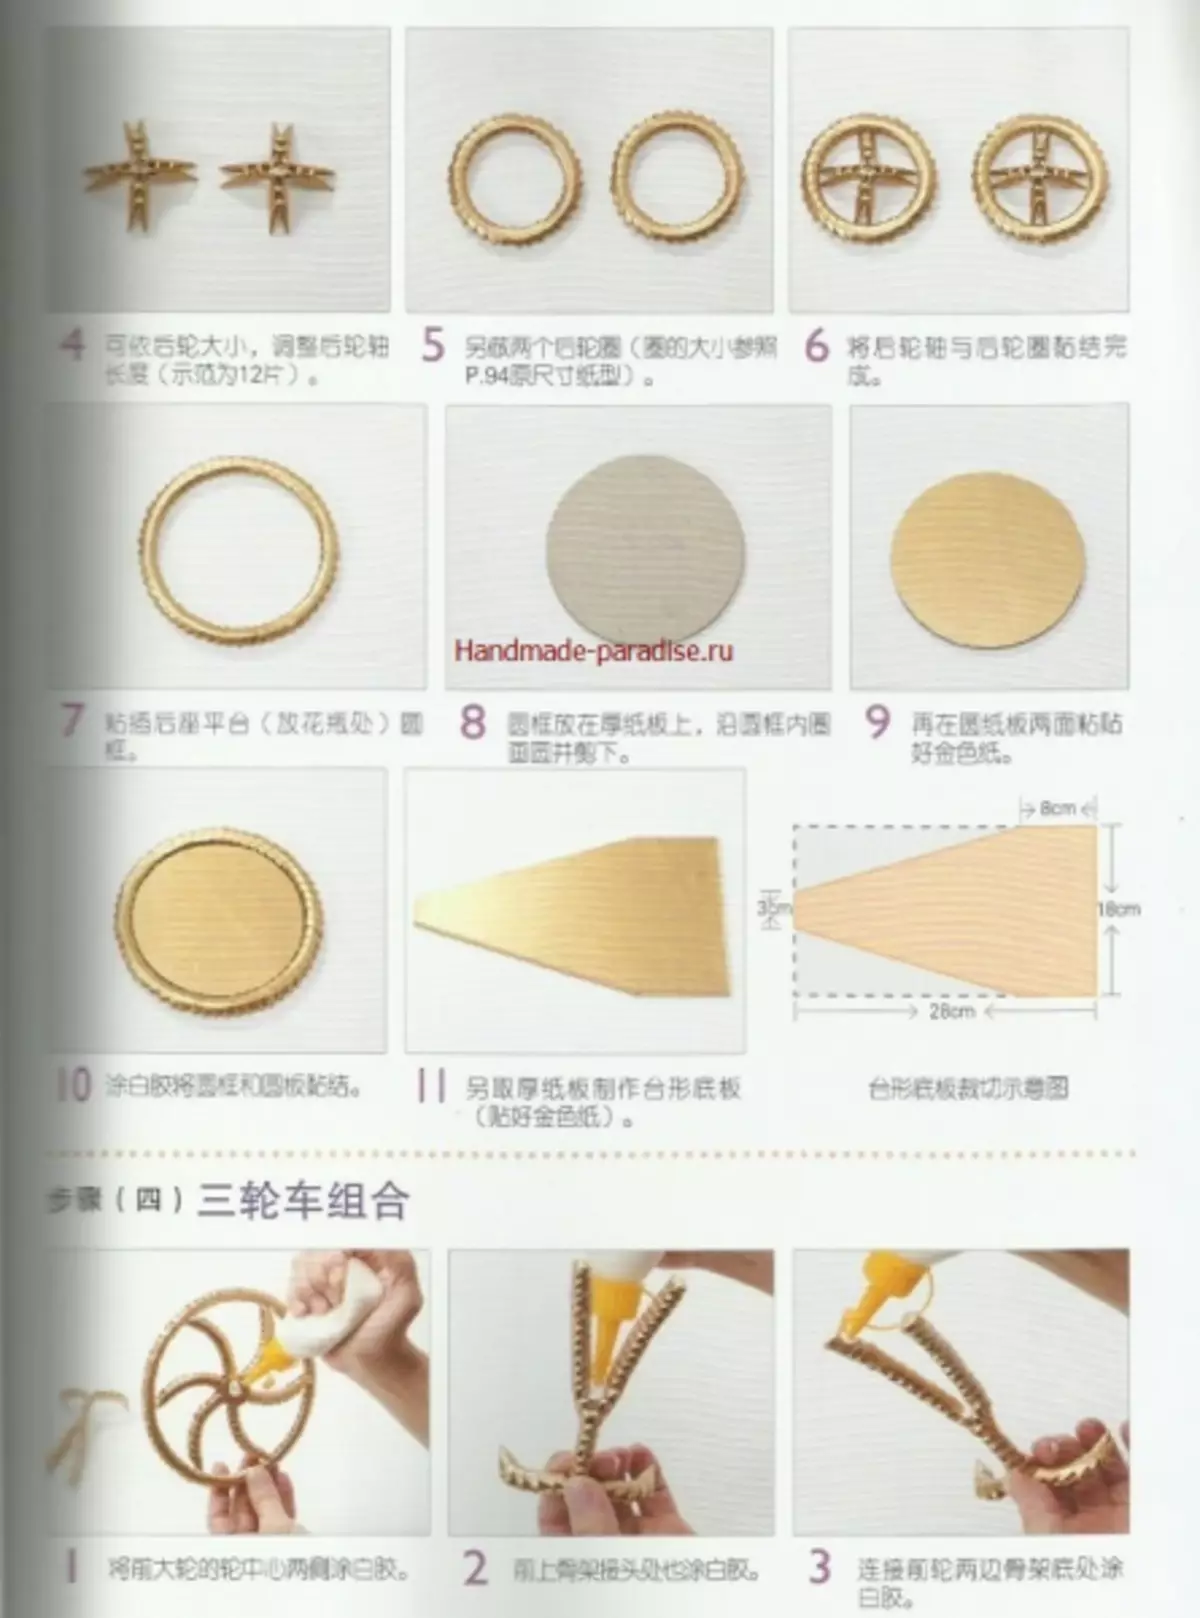 Αρθρωτό origami. Ιαπωνικό περιοδικό με κύρια μαθήματα